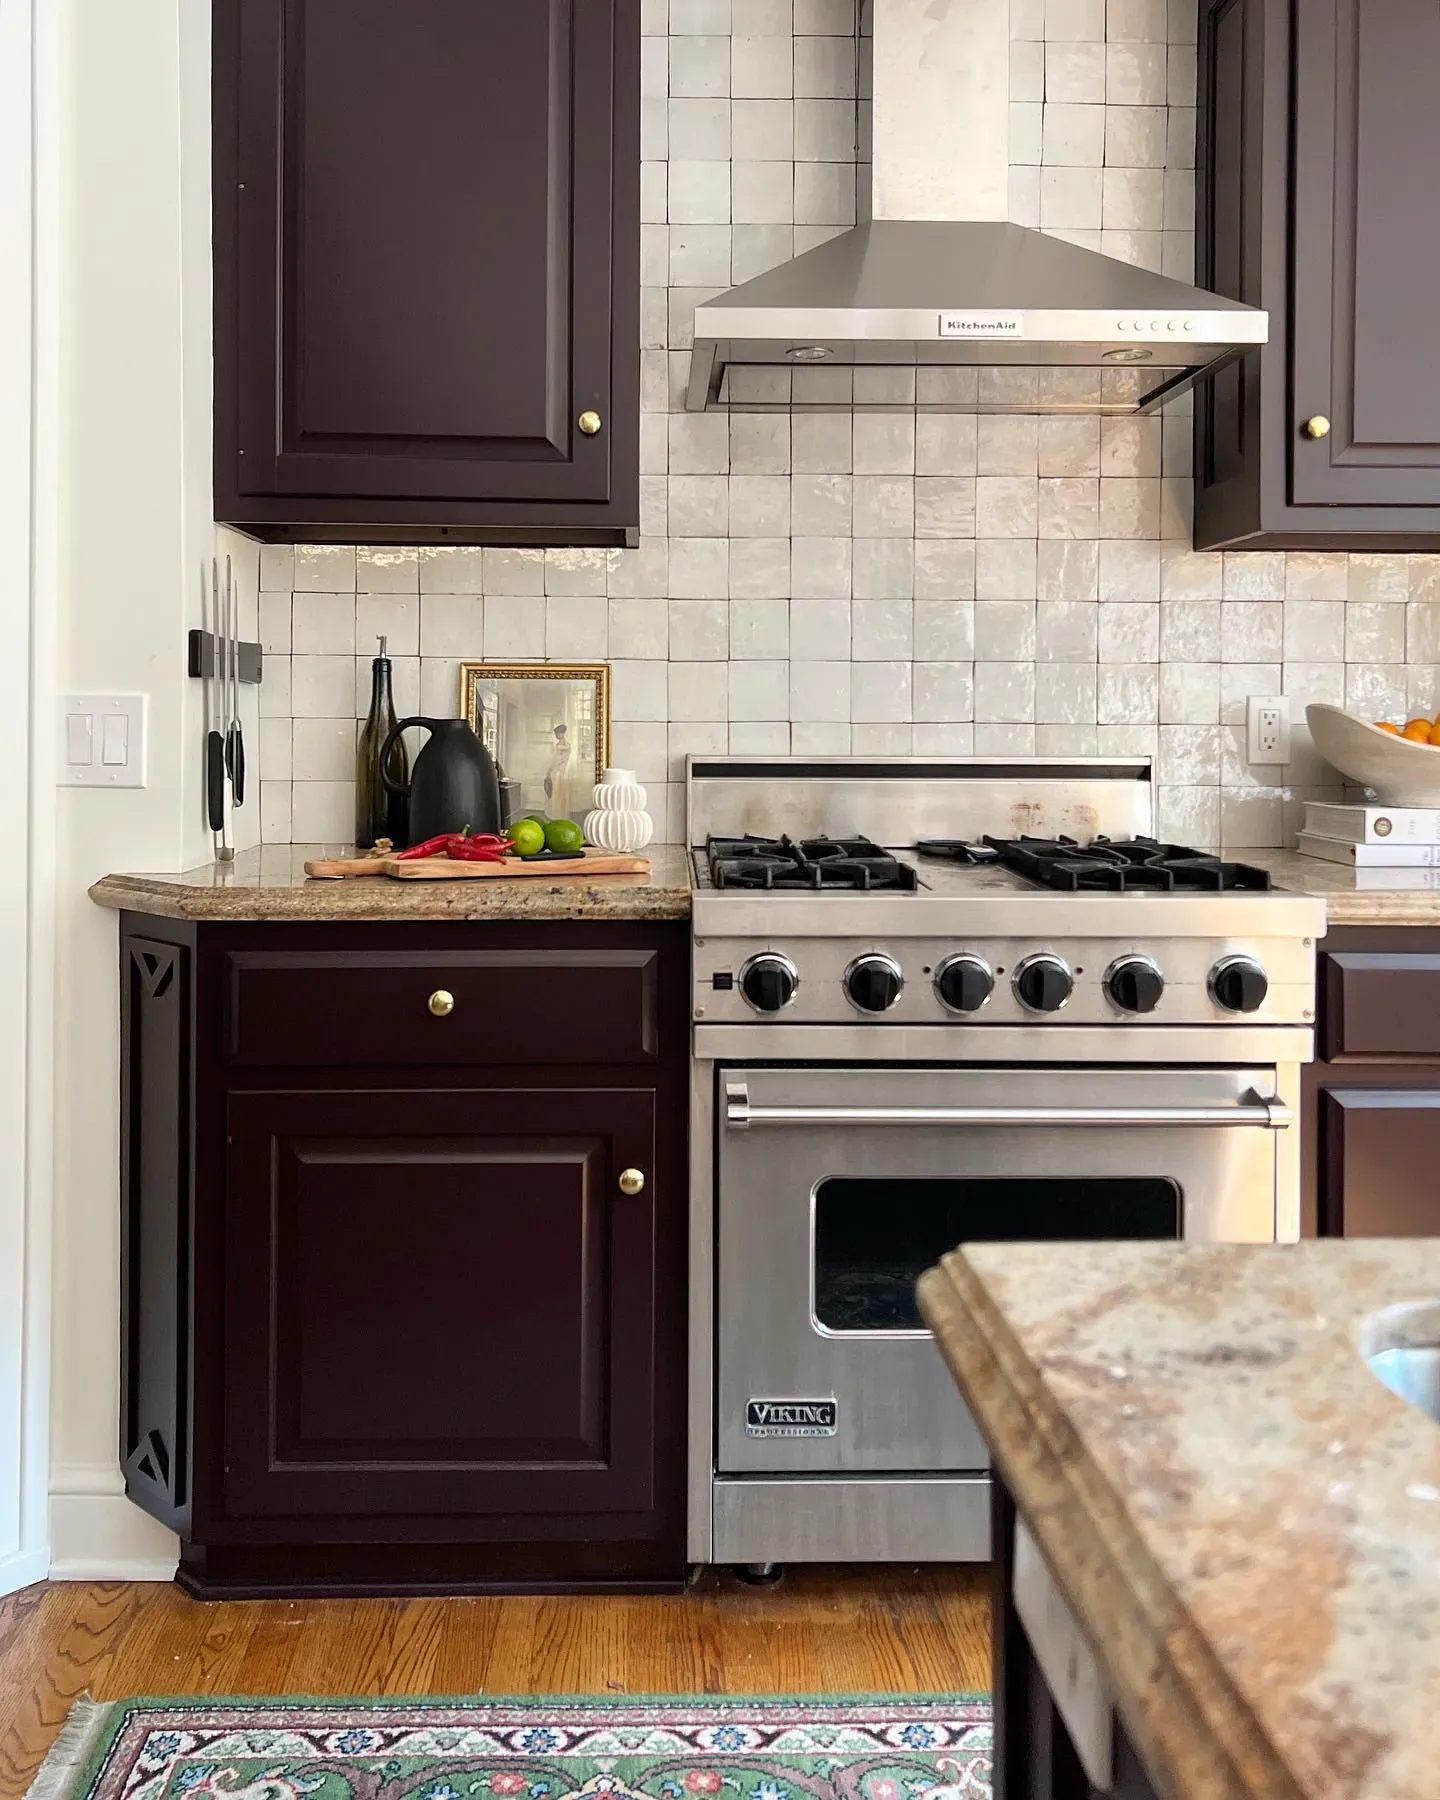 Sherwin Williams Raisin kitchen cabinets color